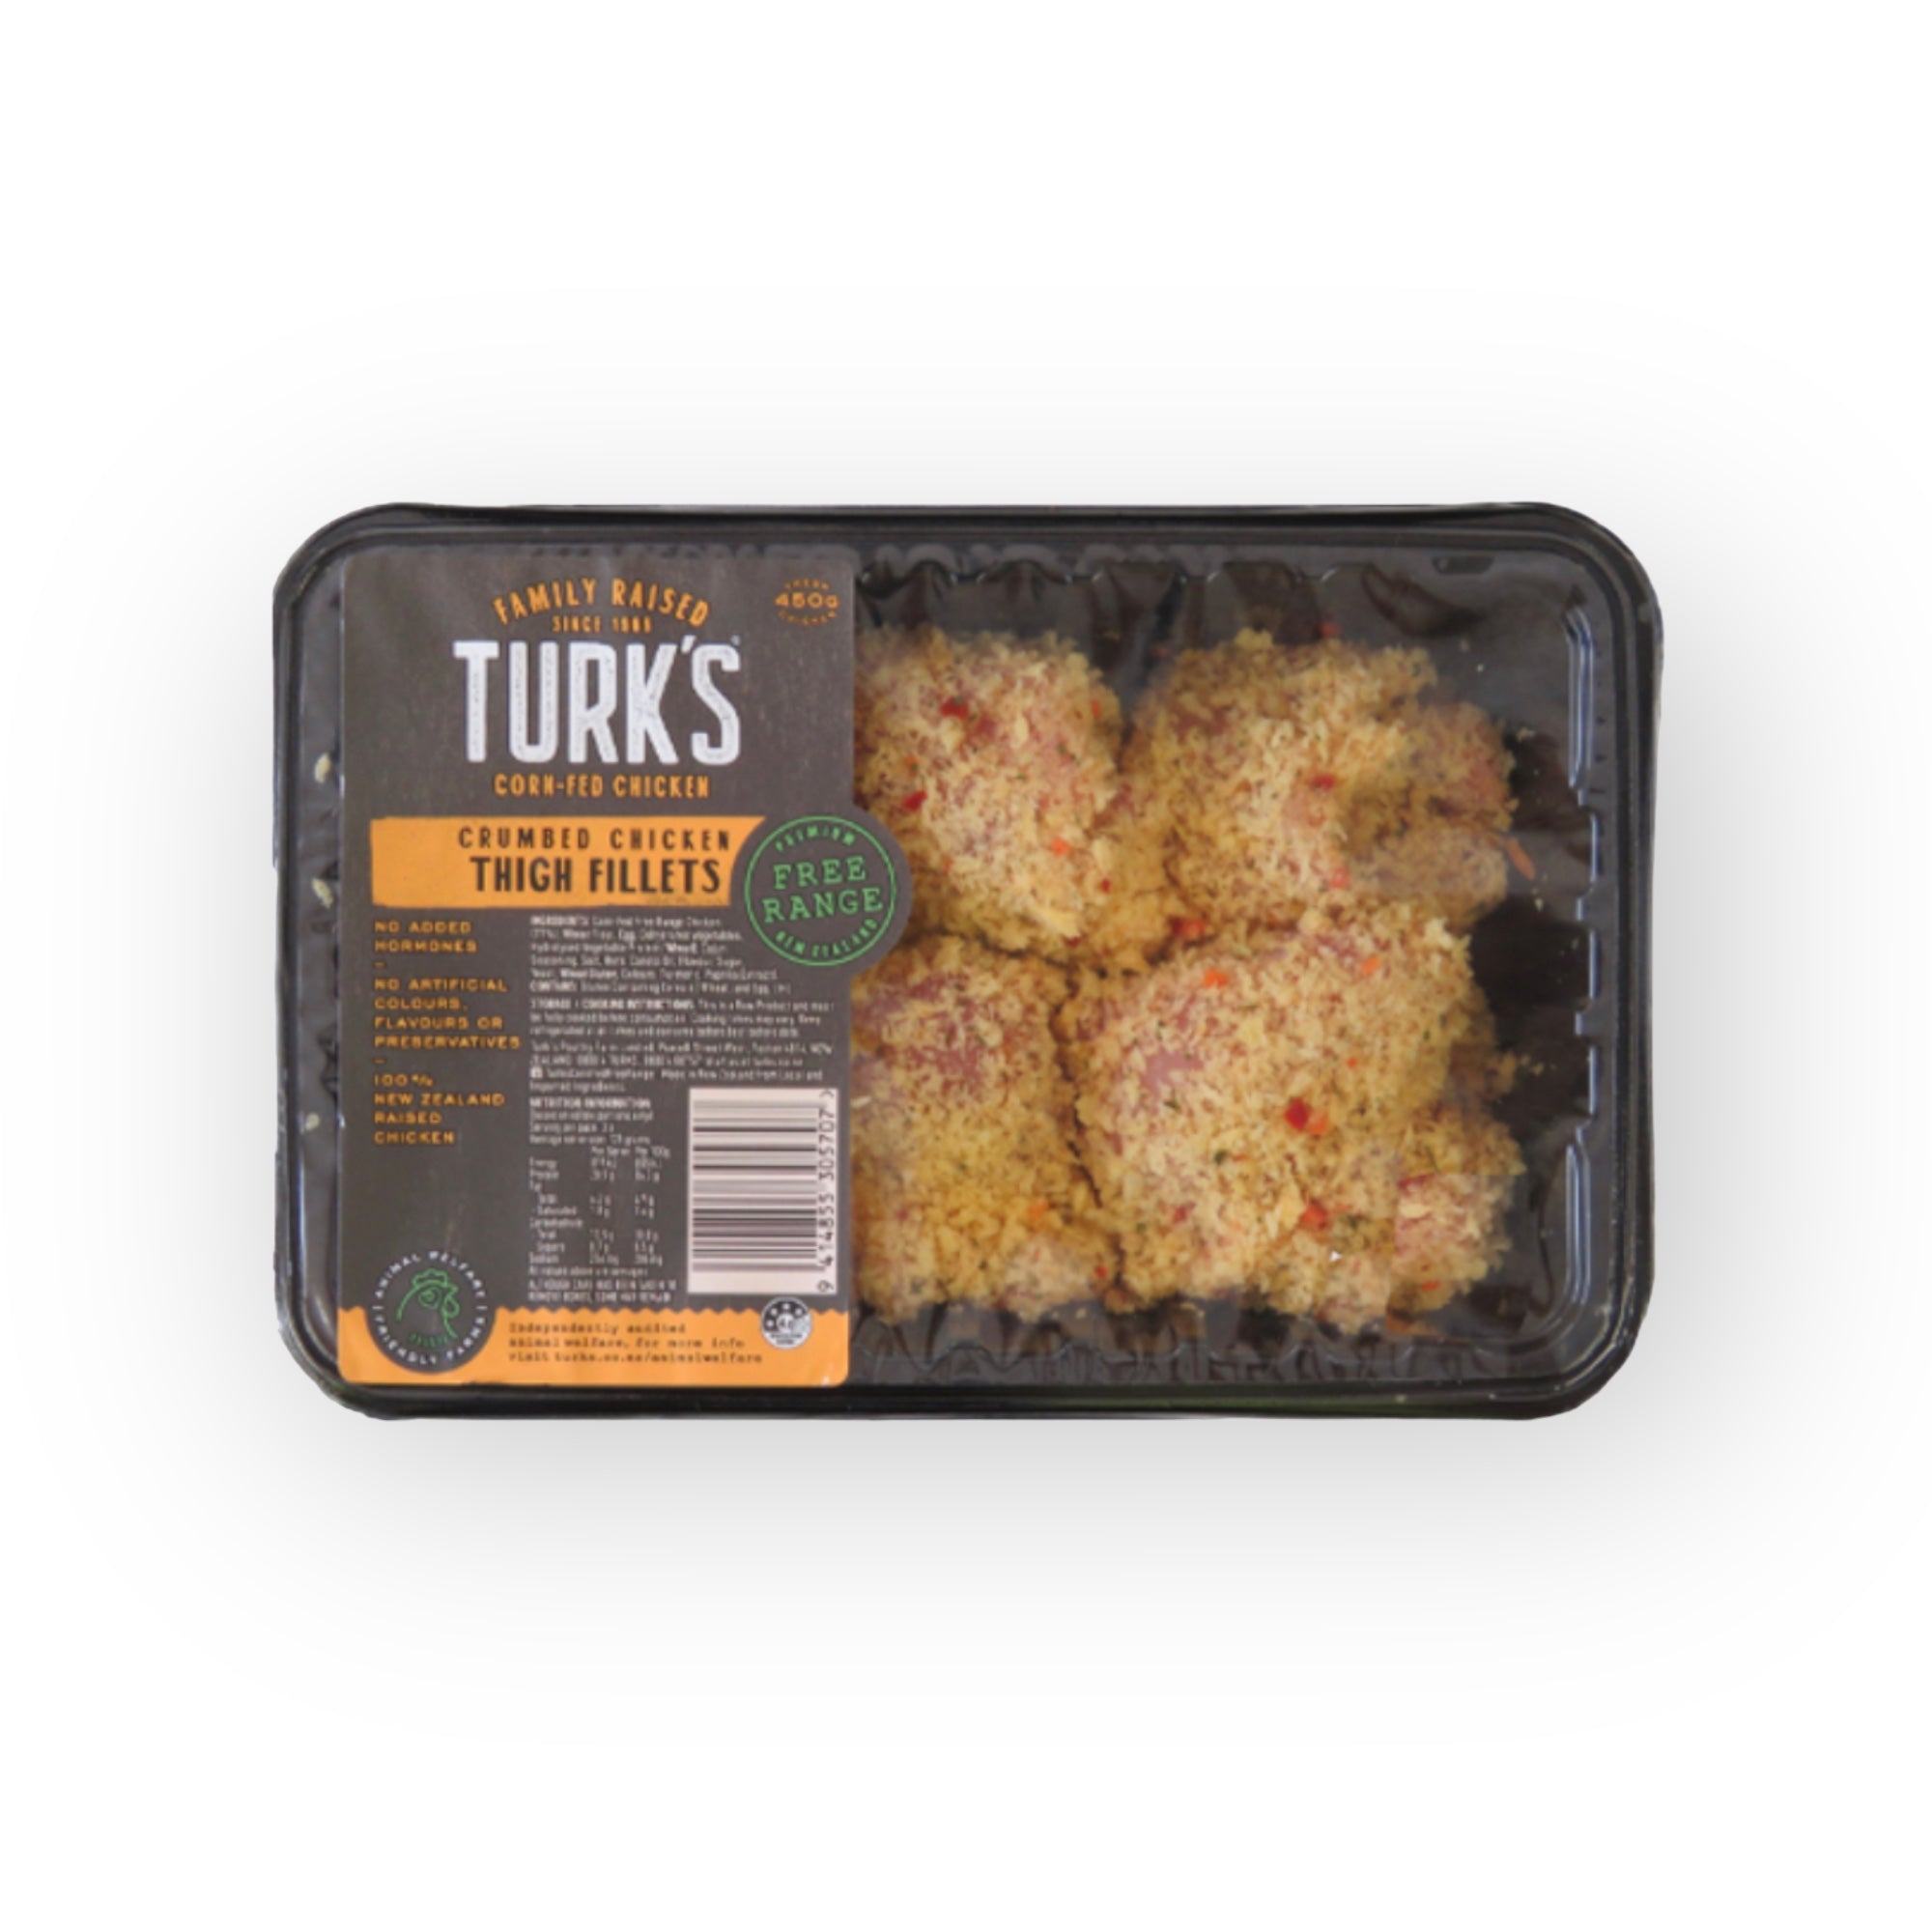 Turk's Free-Range Crumbed Chicken Thigh Fillets 450g (Frozen)